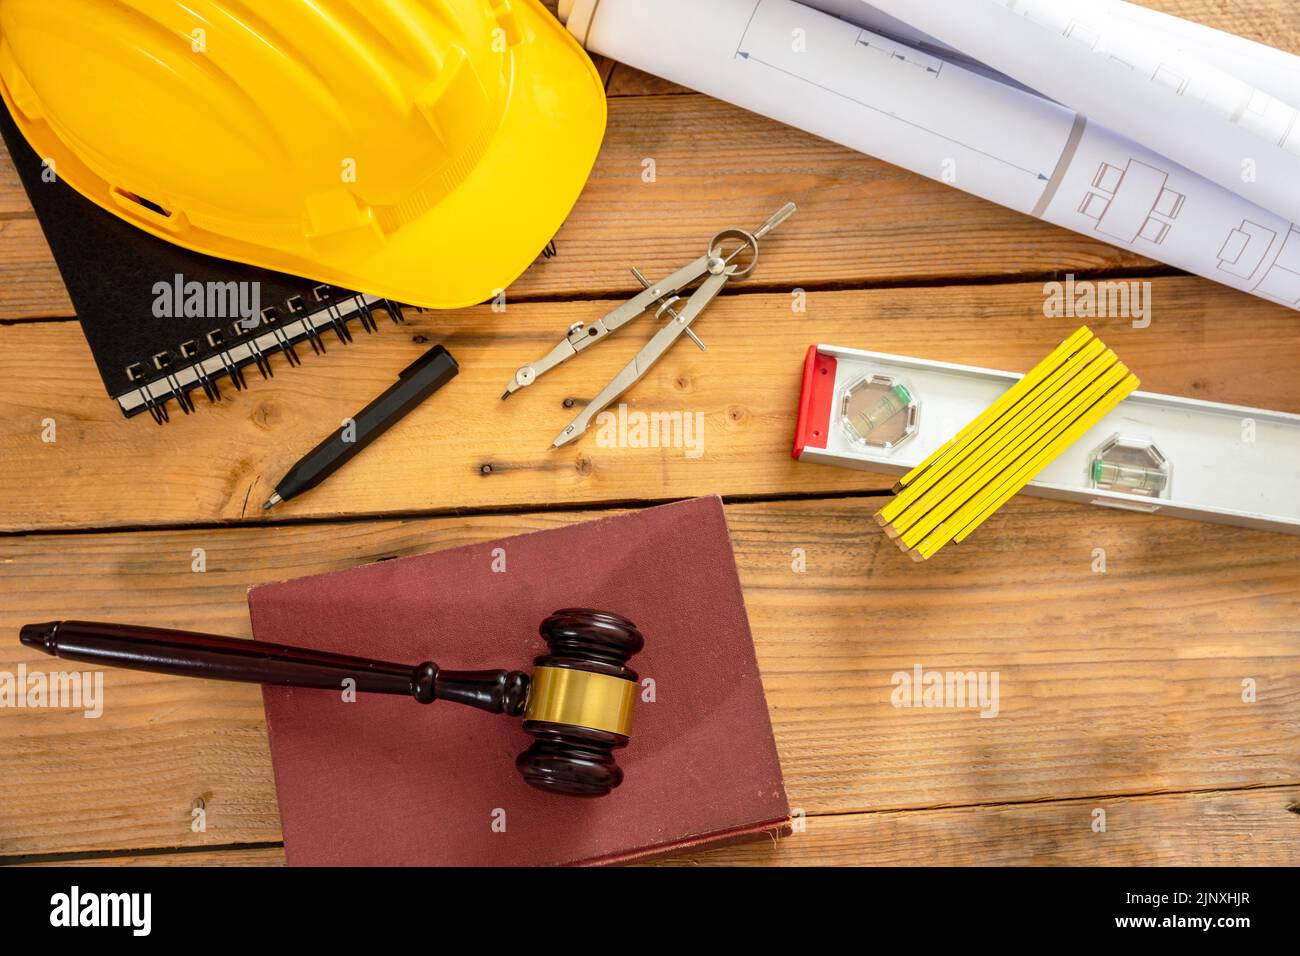 Construcción y derecho laboral en plano. Juzgue el martillo y las herramientas de ingeniería sobre una mesa de madera, vista superior. Foto de stock